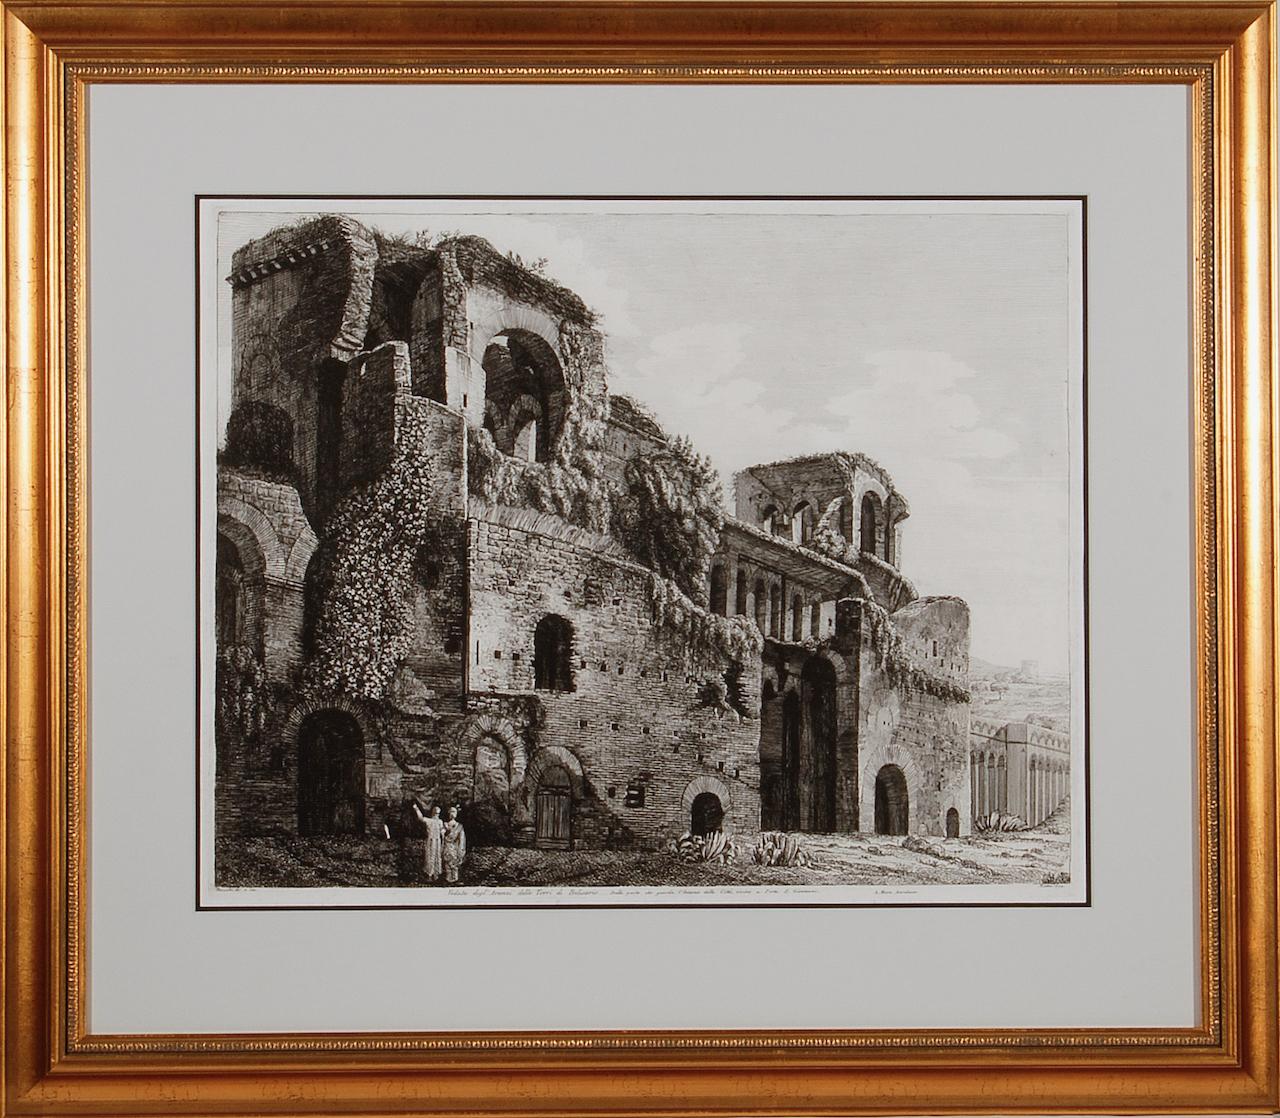 Les ruines des baignoires romaines de Belisarius : eau-forte du 19e siècle de Luigi Rossini